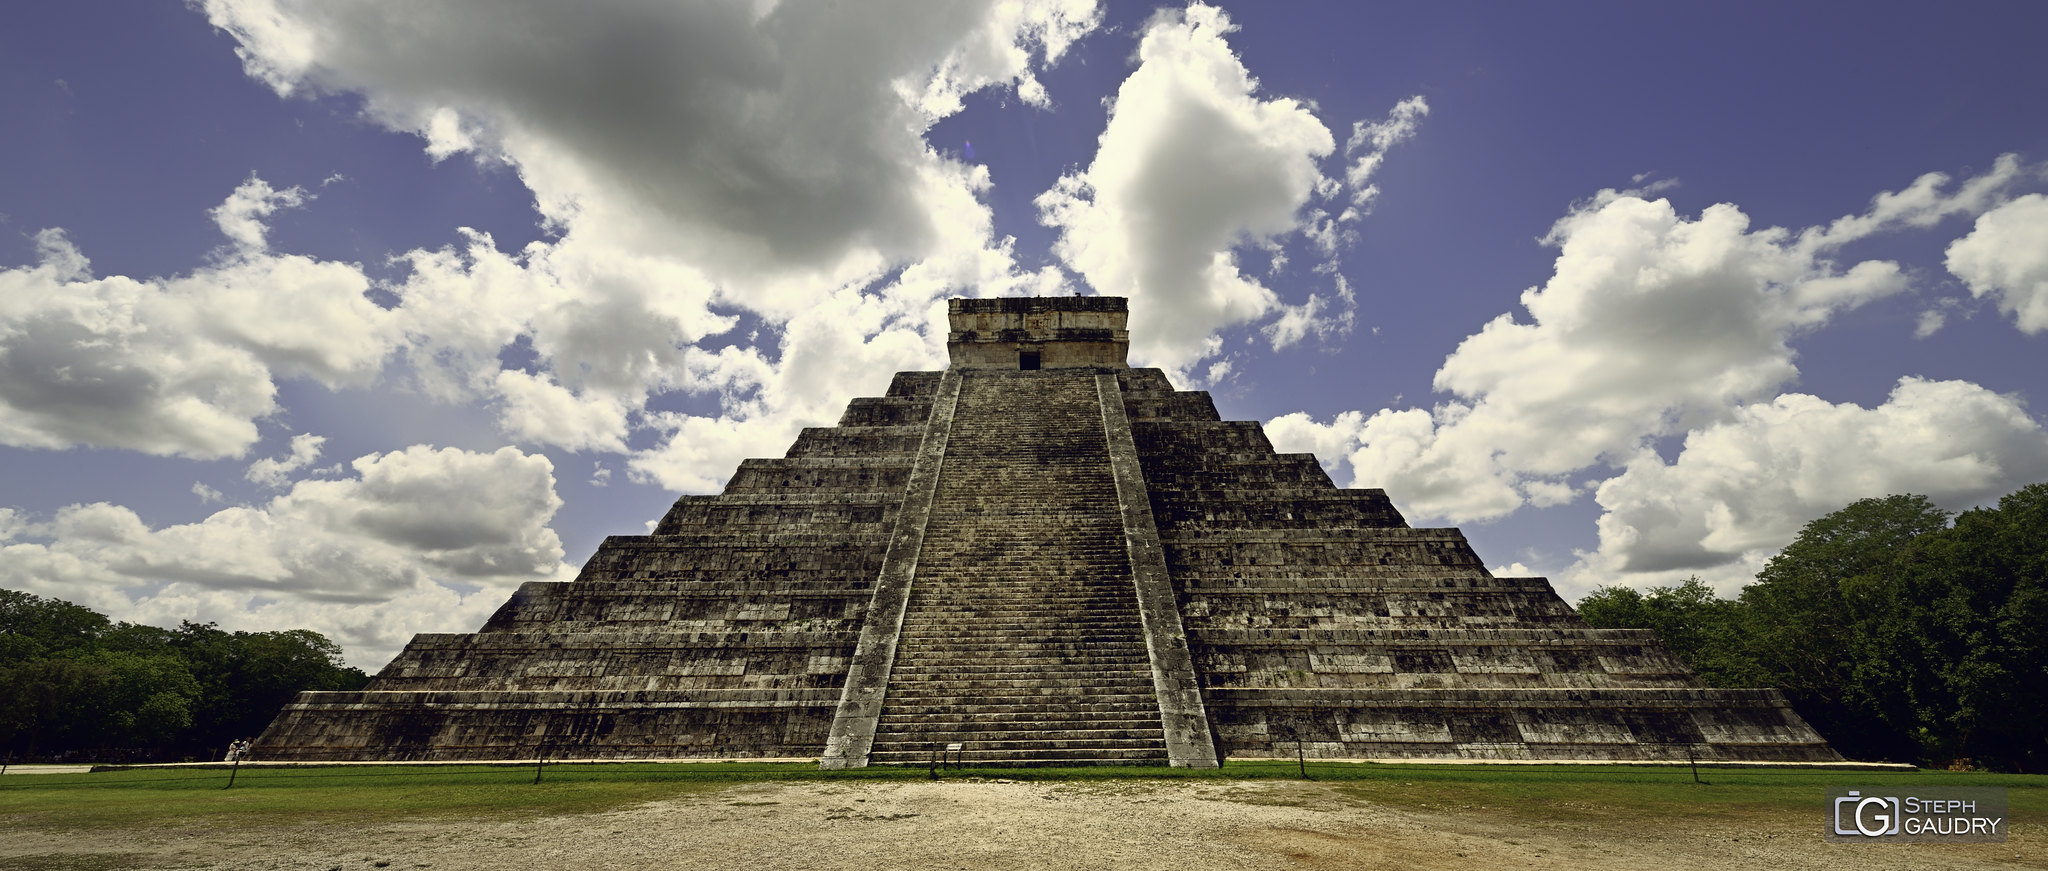 Chichen Itza - El Castillo (pyramide de Kukulcán) [Cliquez pour lancer le diaporama]